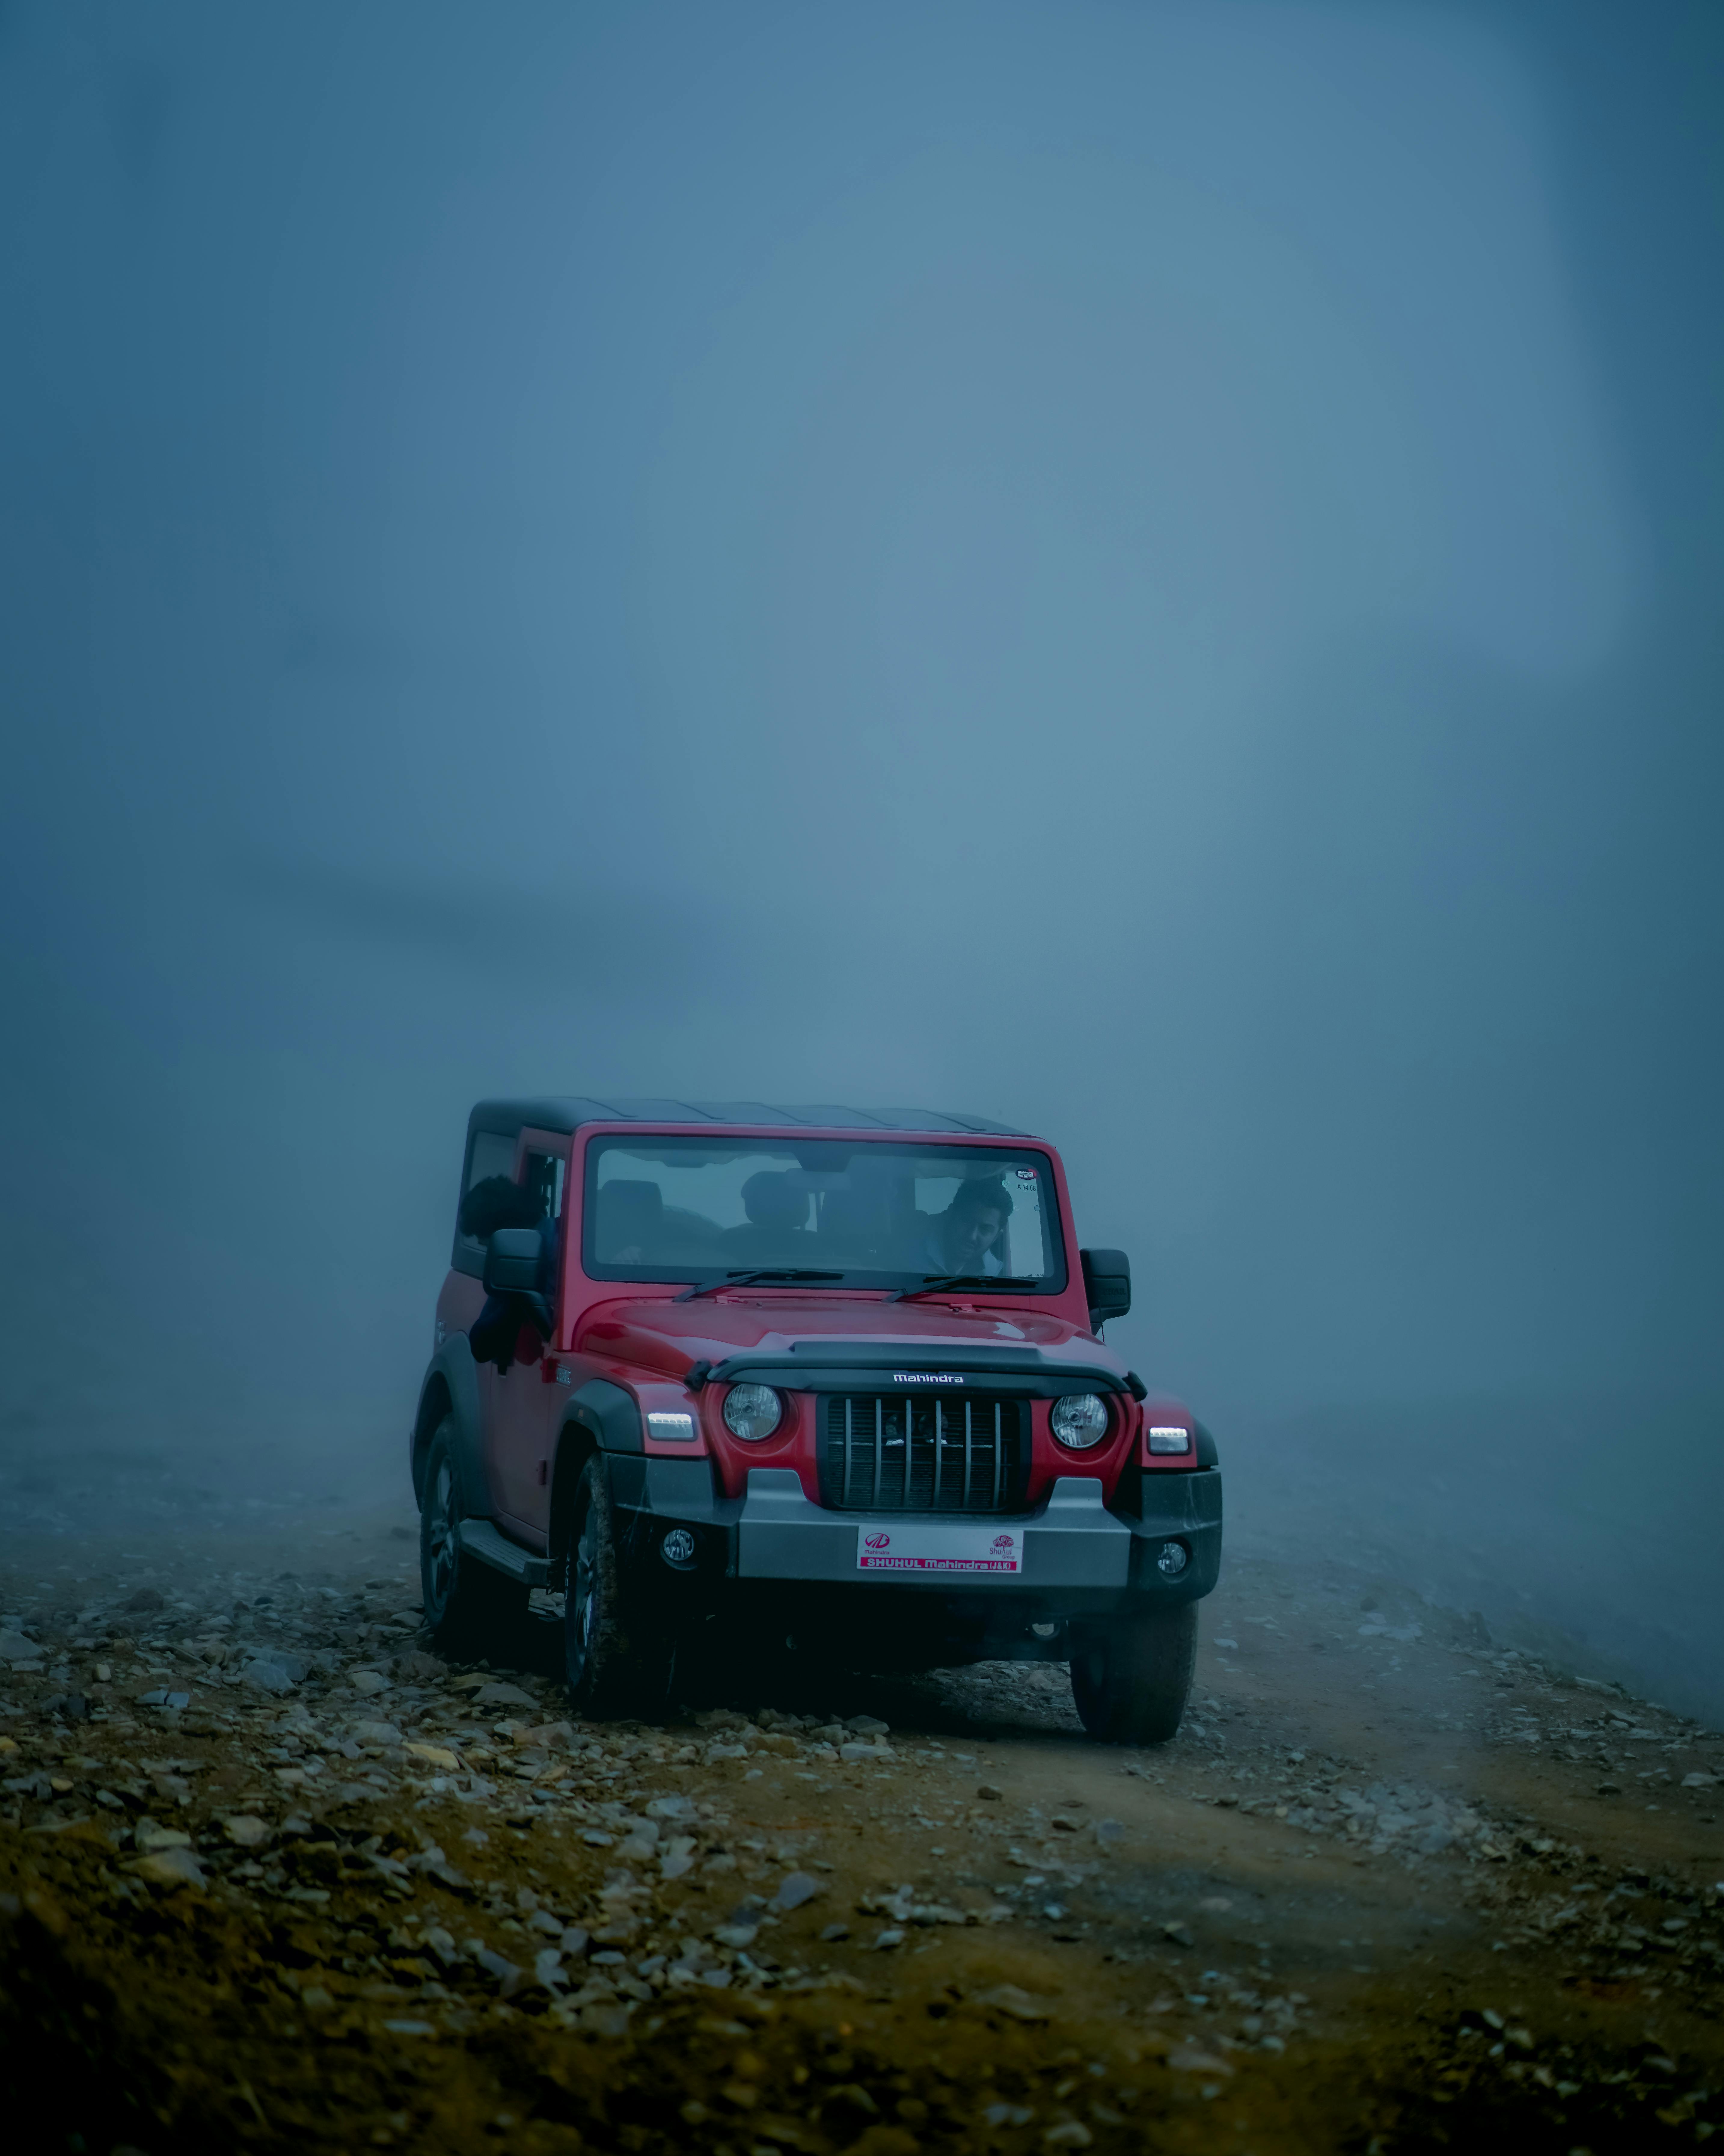 HD thar jeep wallpapers | Peakpx